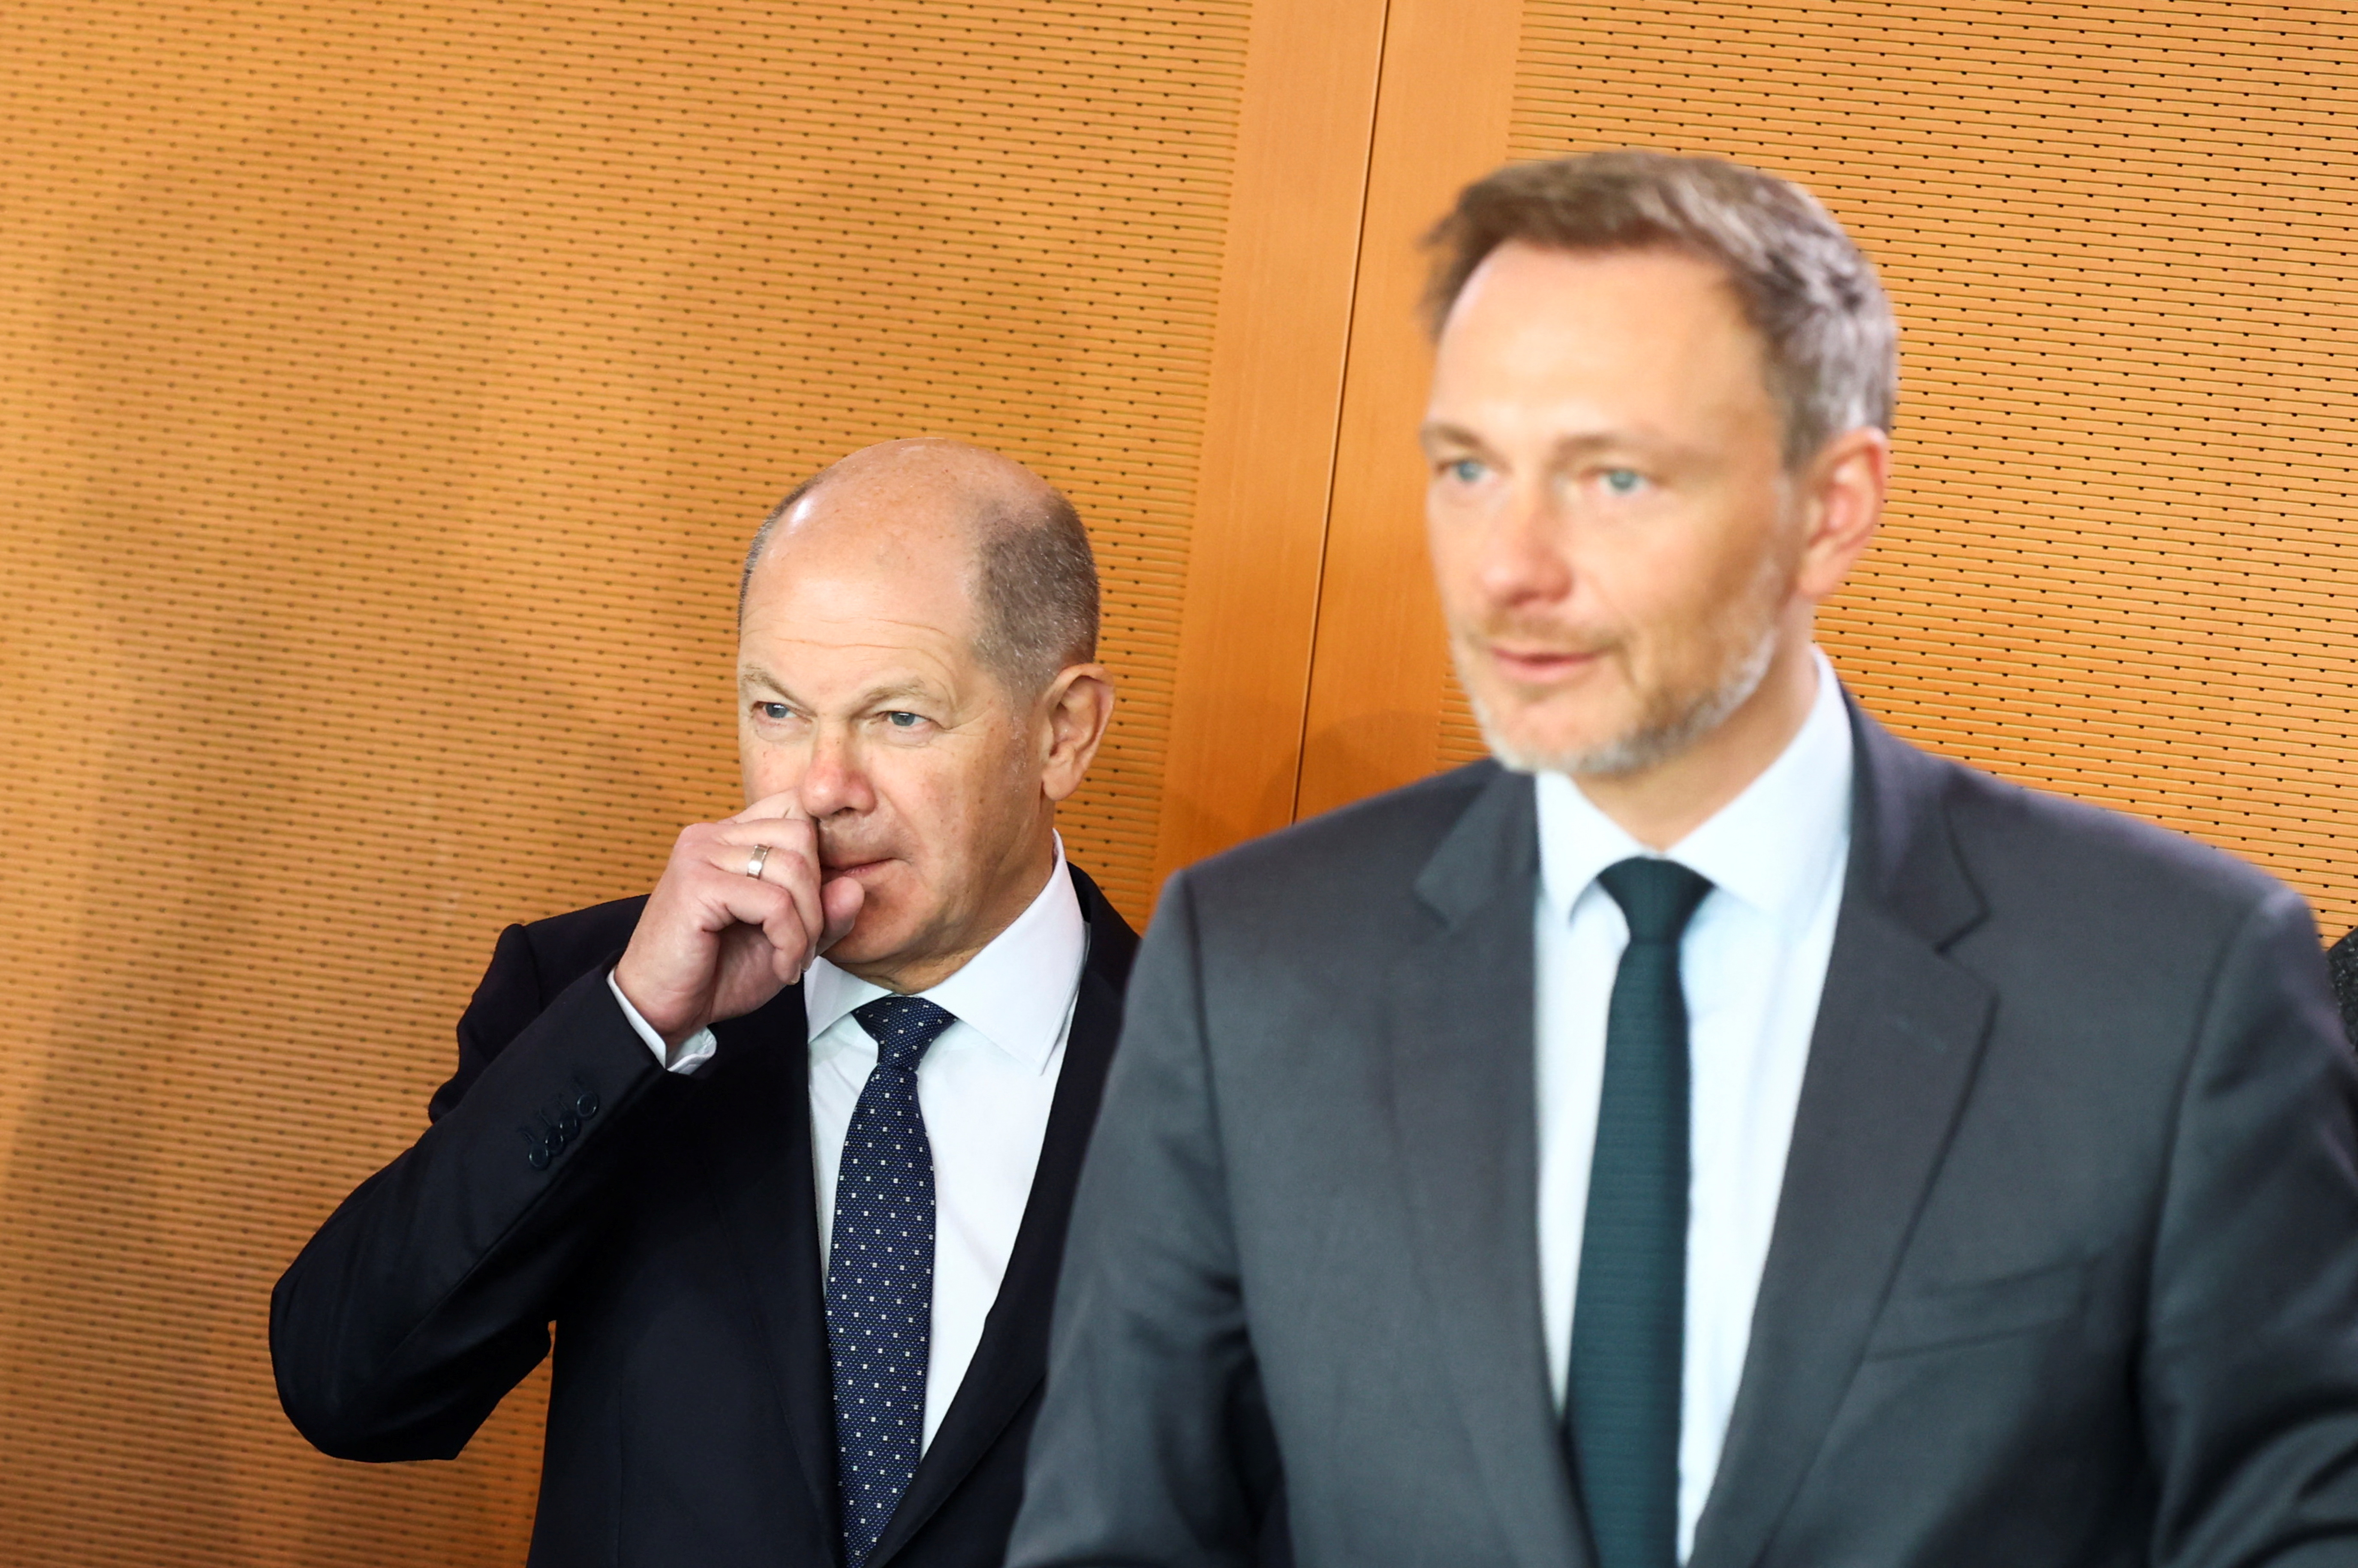 El canciller aleman, Olaf Scholz y el Ministro de Finanzas, Christian Lindner. Este último, líder del partido liberal, golpeado por los malos resultados electorales, pondrá a prueba si podrá mantener su firmeza presupuestaria